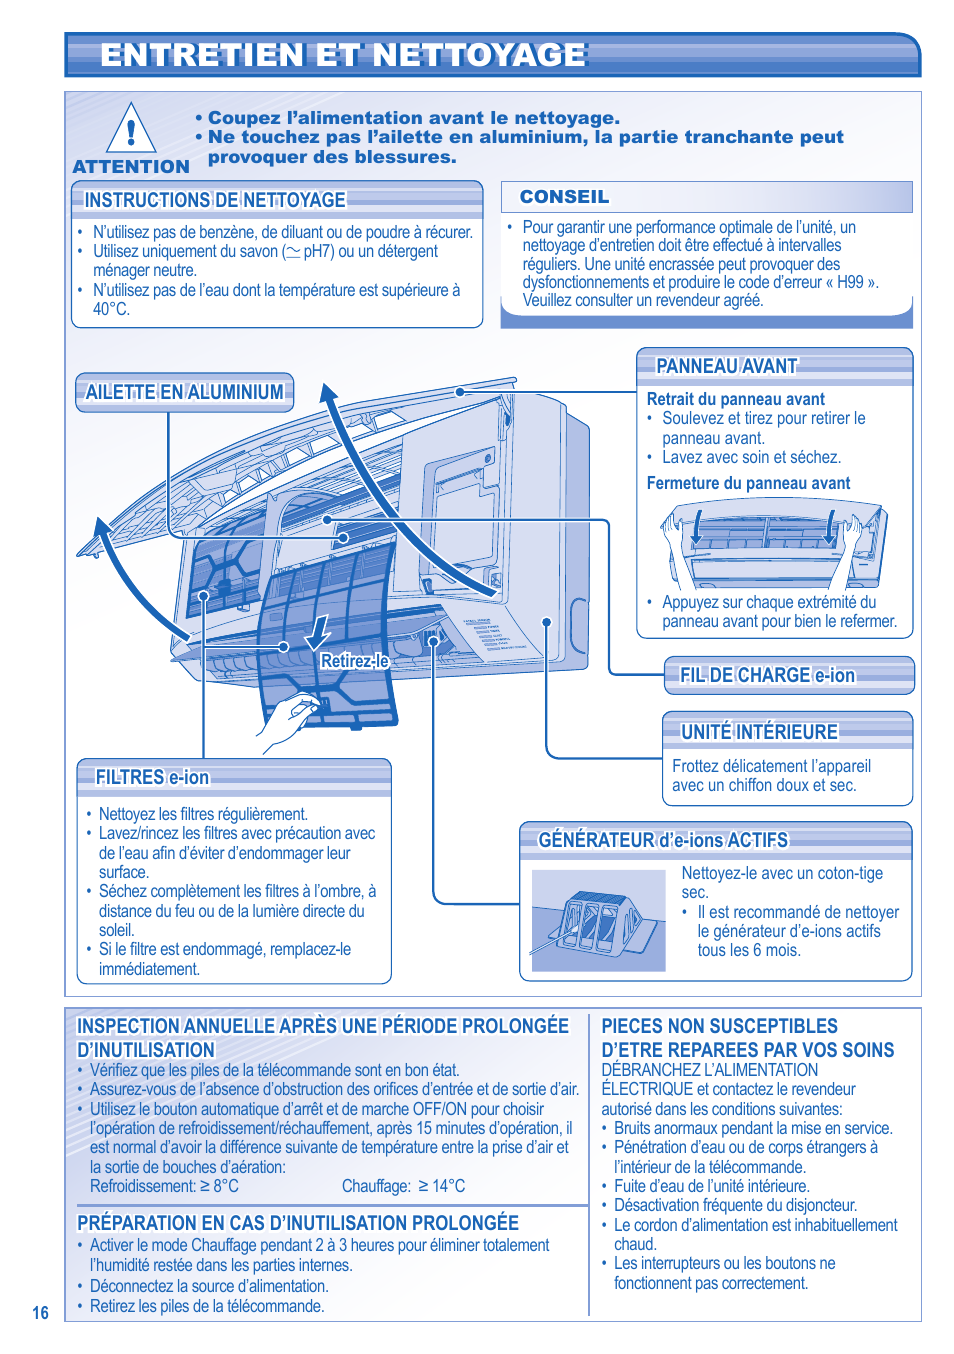 Entretien et nettoyage entretien et nettoyage | Panasonic CSE9JKEW3 Manuel d'utilisation | Page 8 / 10